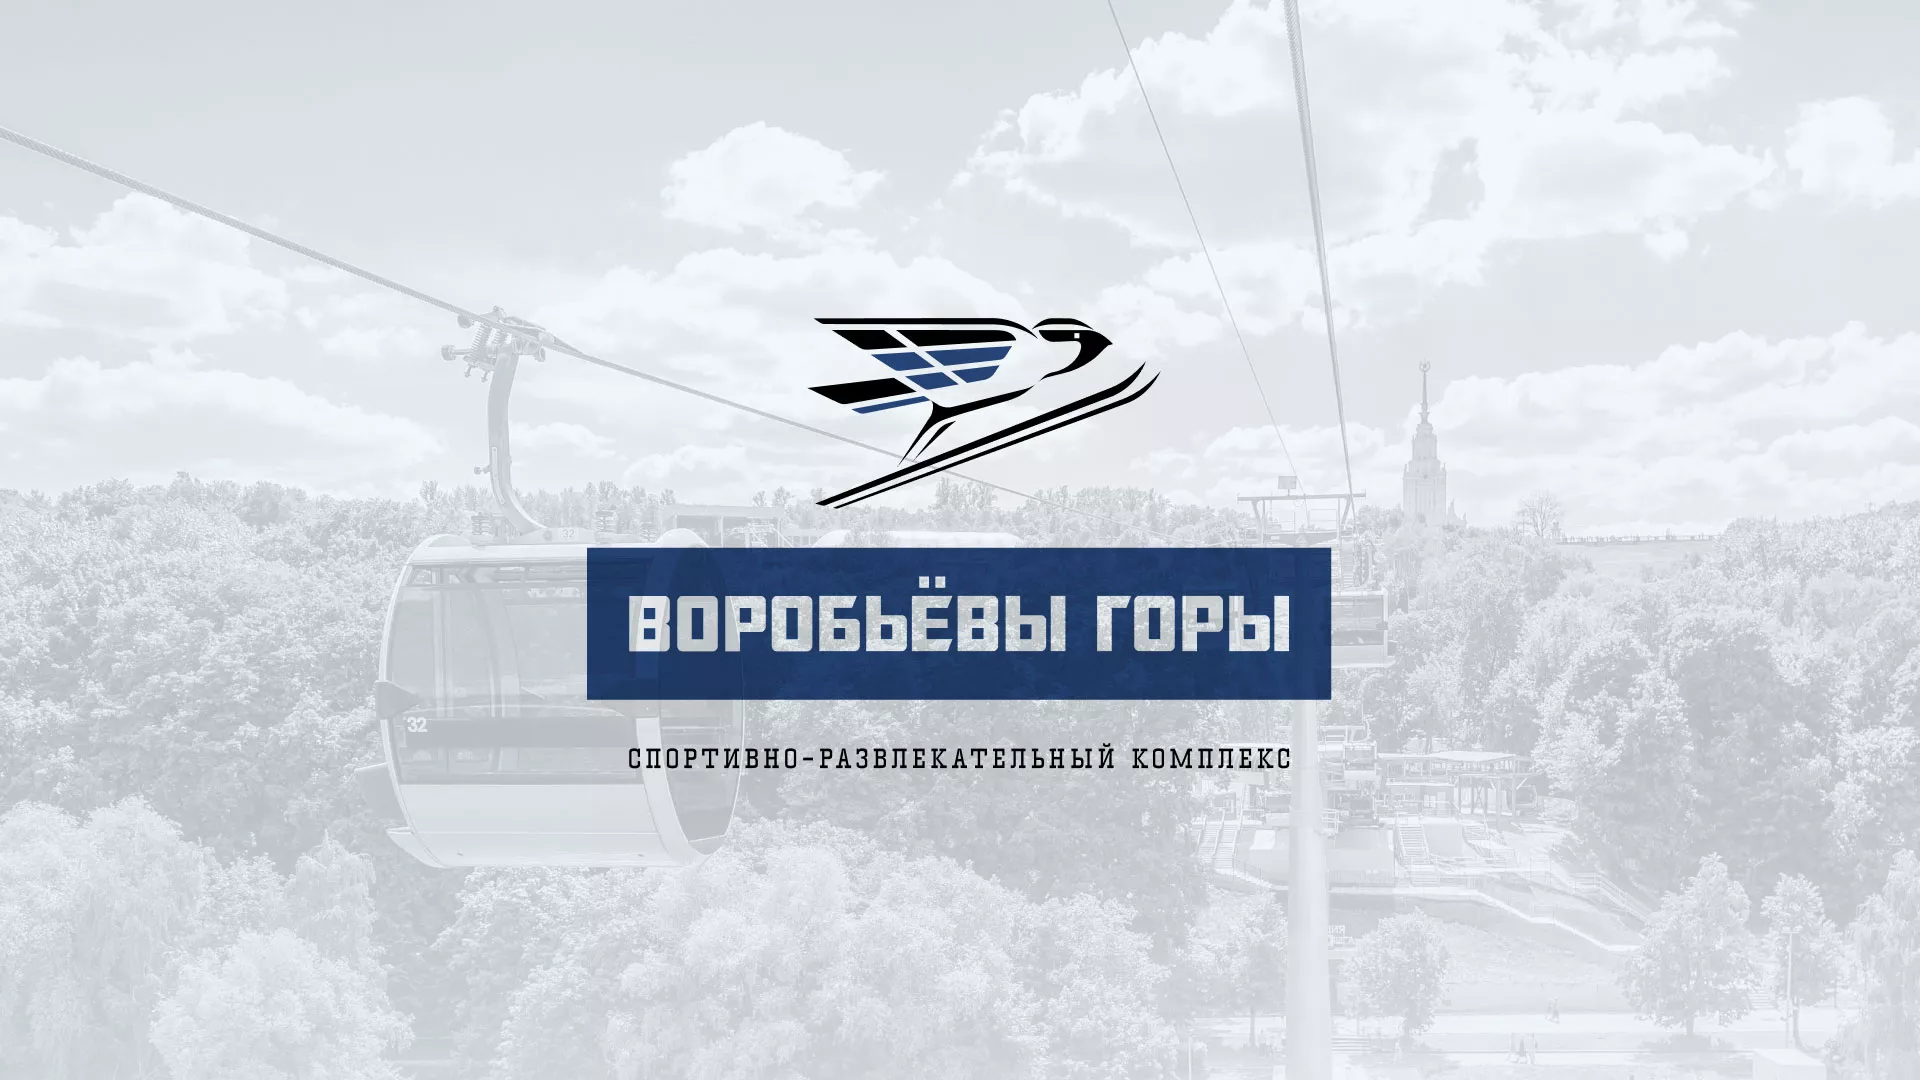 Разработка сайта в Петухово для спортивно-развлекательного комплекса «Воробьёвы горы»